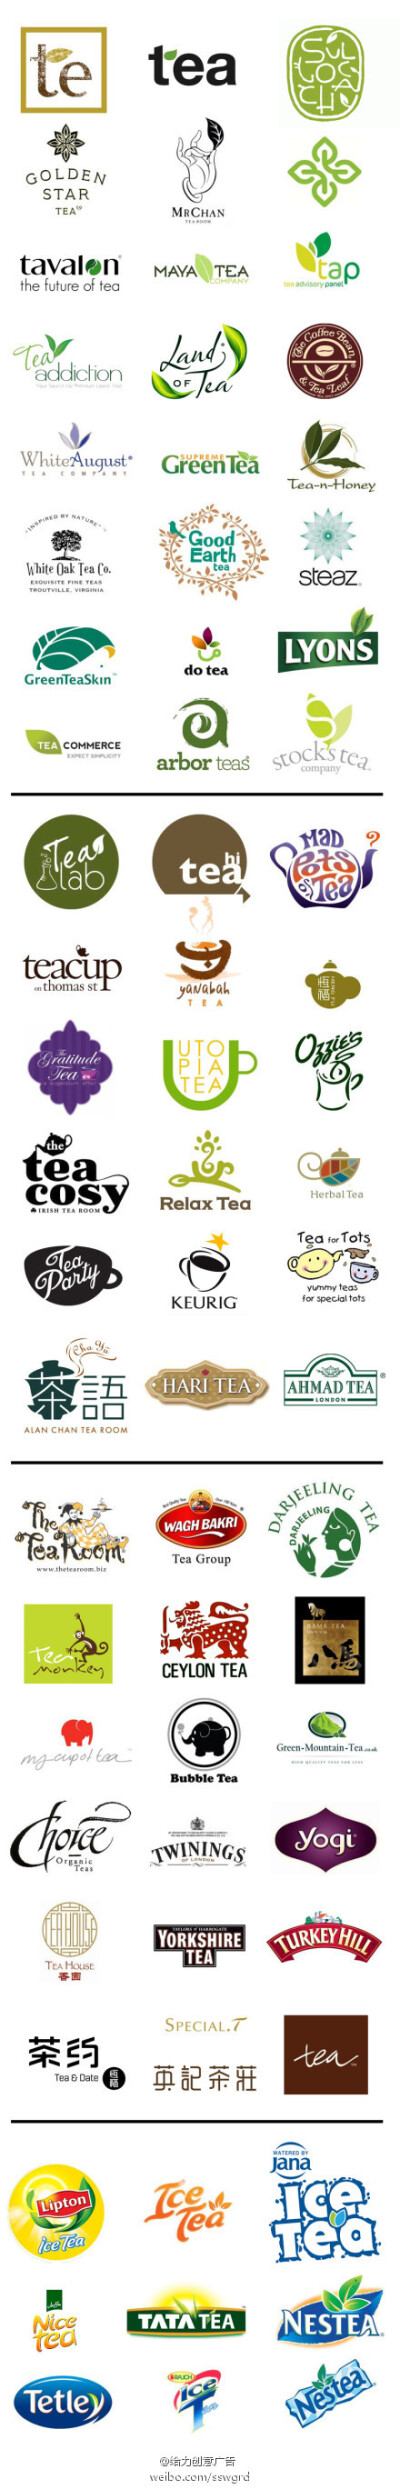 茶叶、茶企、茶饮料的品牌logo设计。三大设计方向：茶叶、茶具与图形字体等。